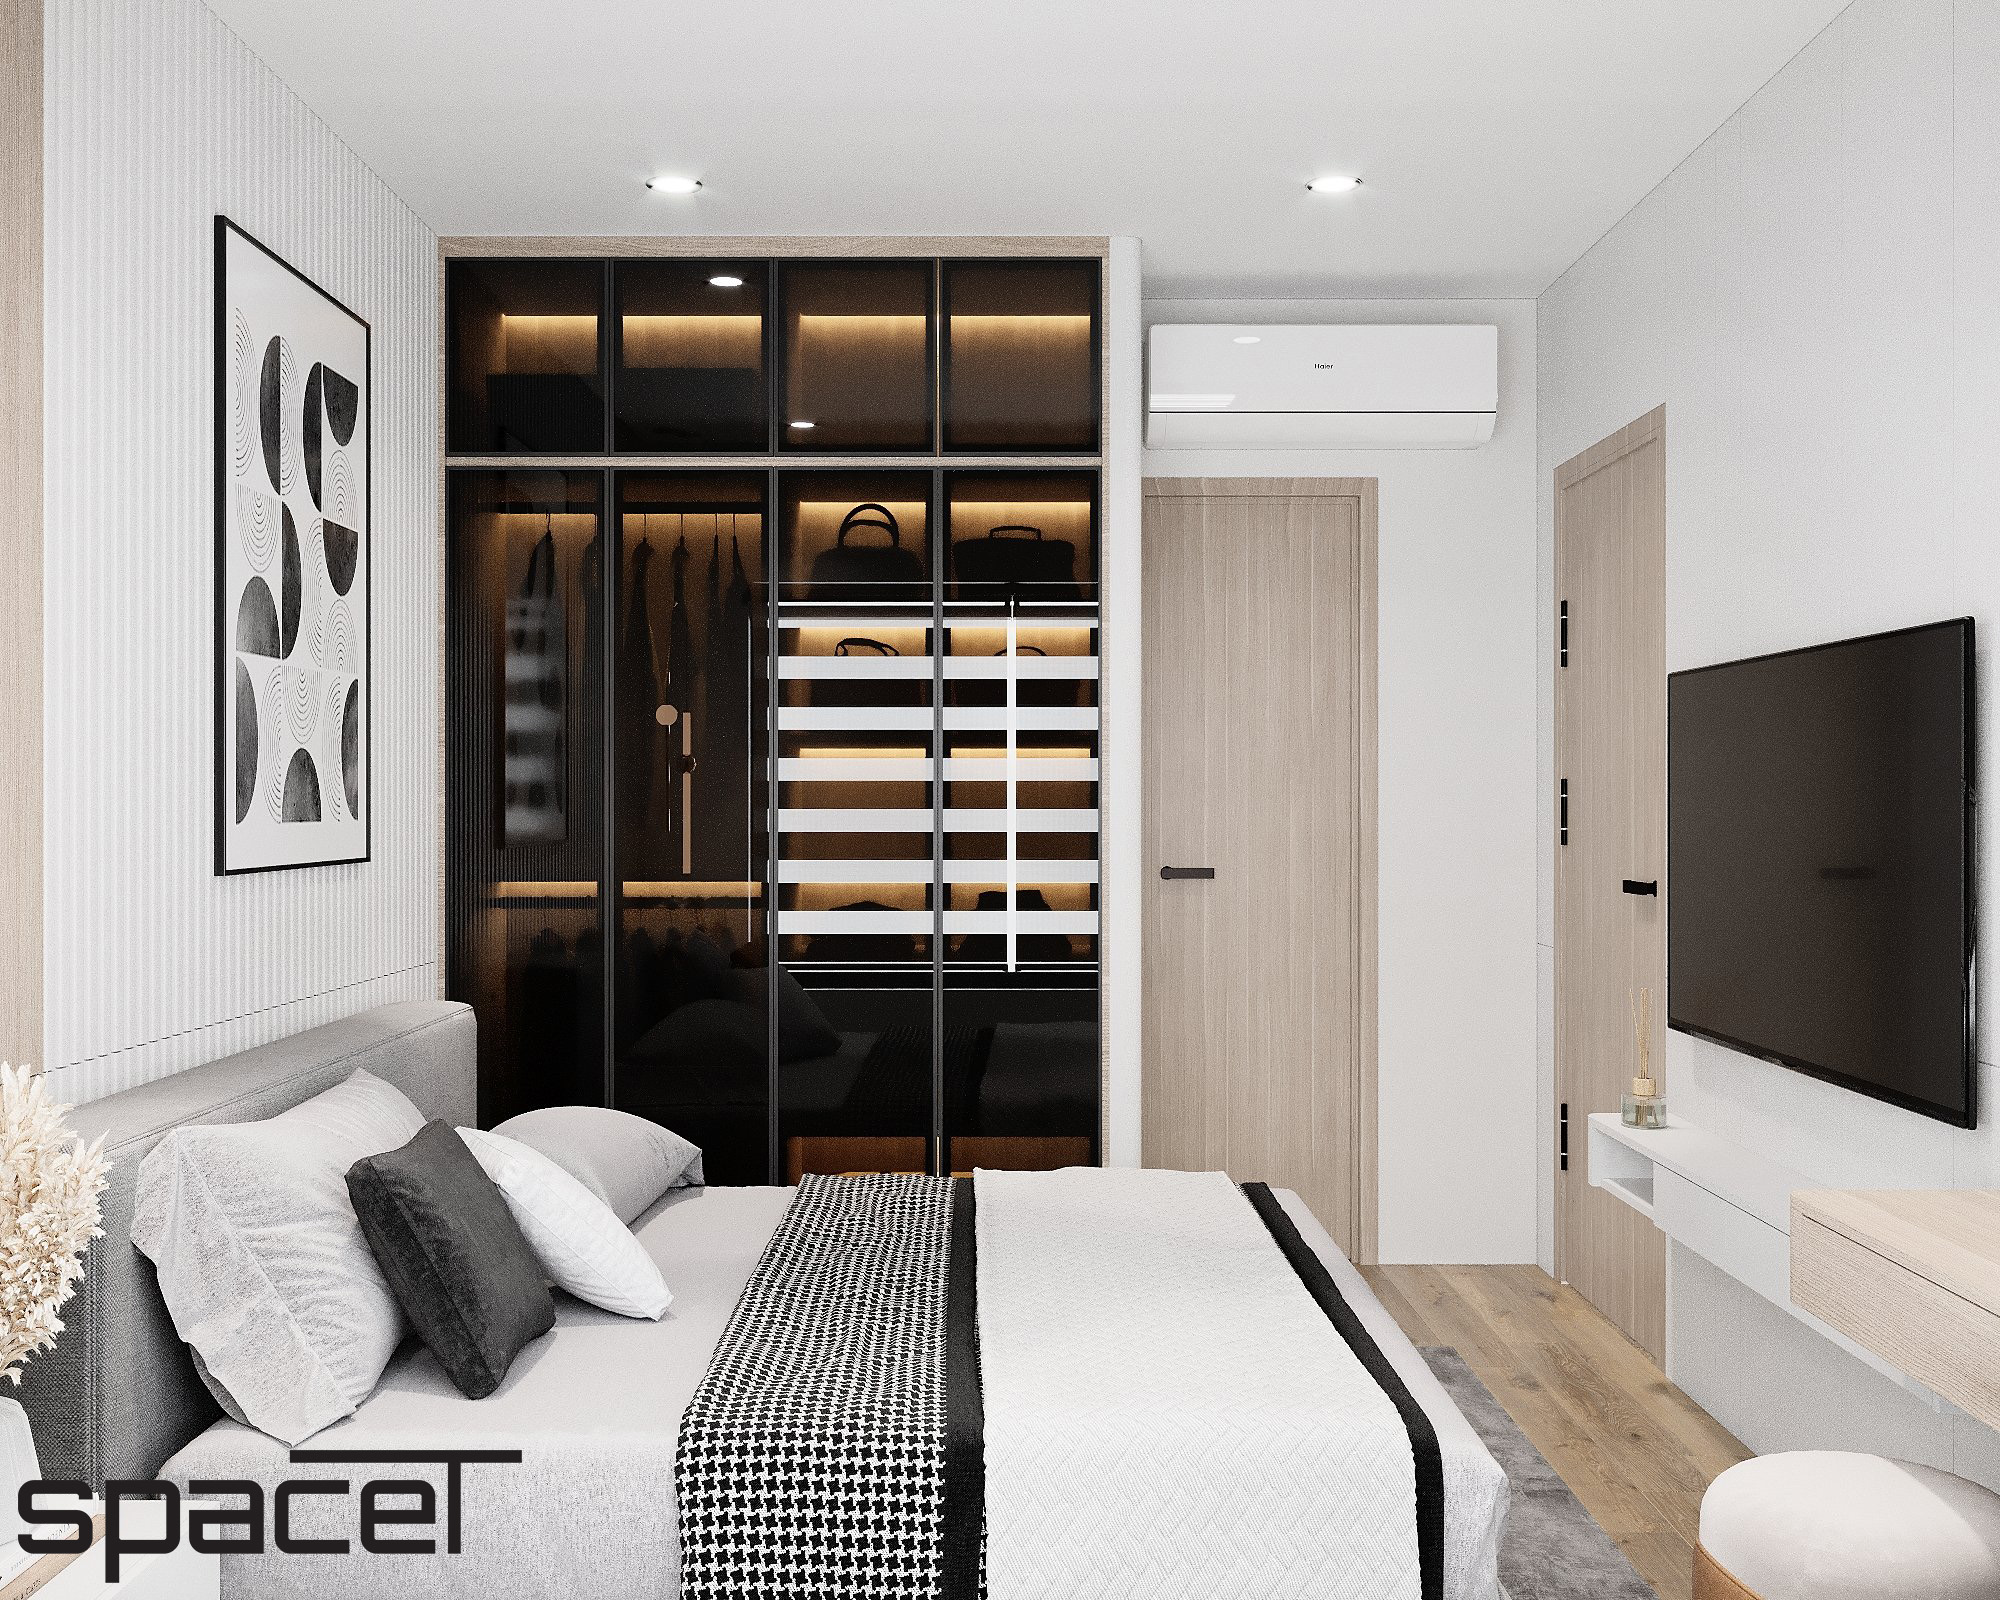 Phòng ngủ, phong cách Hiện đại Modern, thiết kế concept nội thất, căn hộ The Origami Vinhomes Grand Park